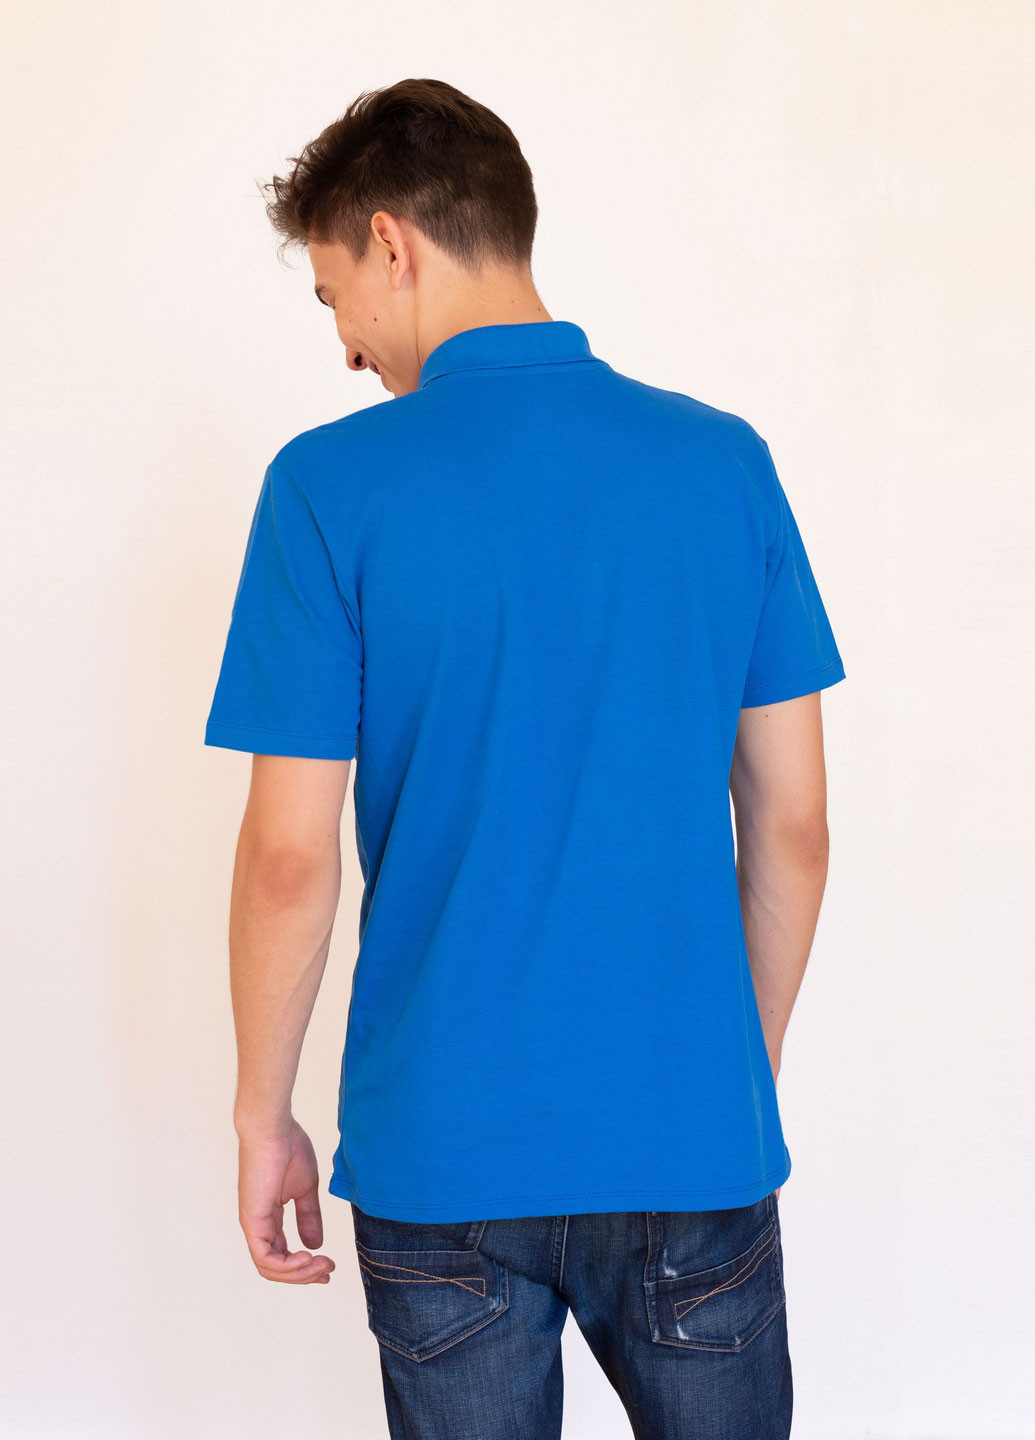 Синяя футболка-футболка поло для мужчин Наталюкс